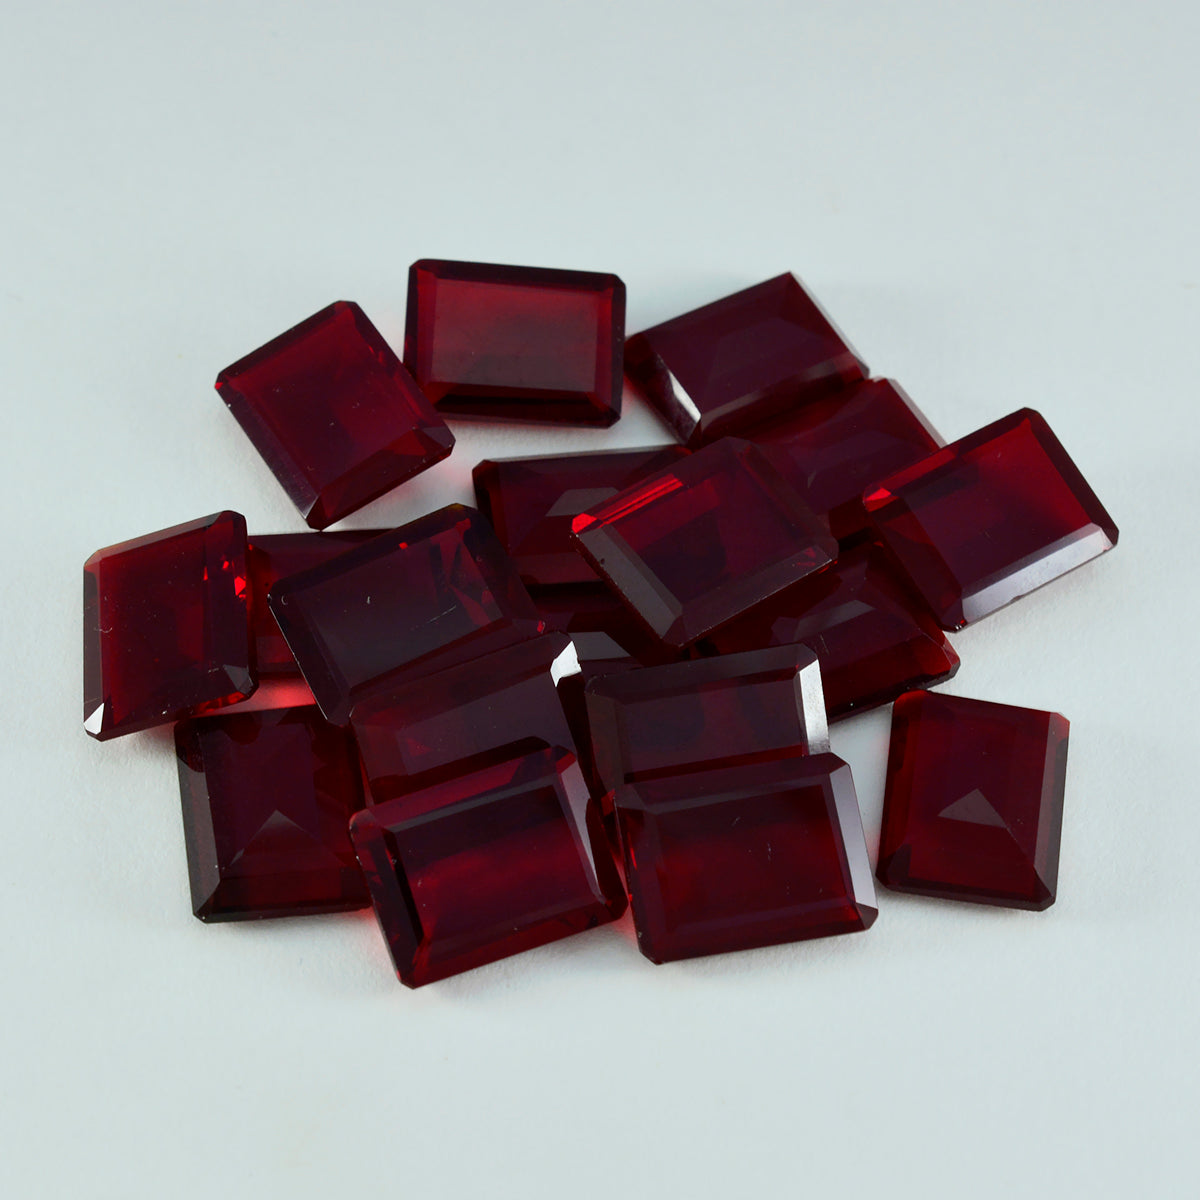 riyogems 1шт красный рубин cz граненый 9x11 мм восьмиугольная форма удивительный качество свободный драгоценный камень